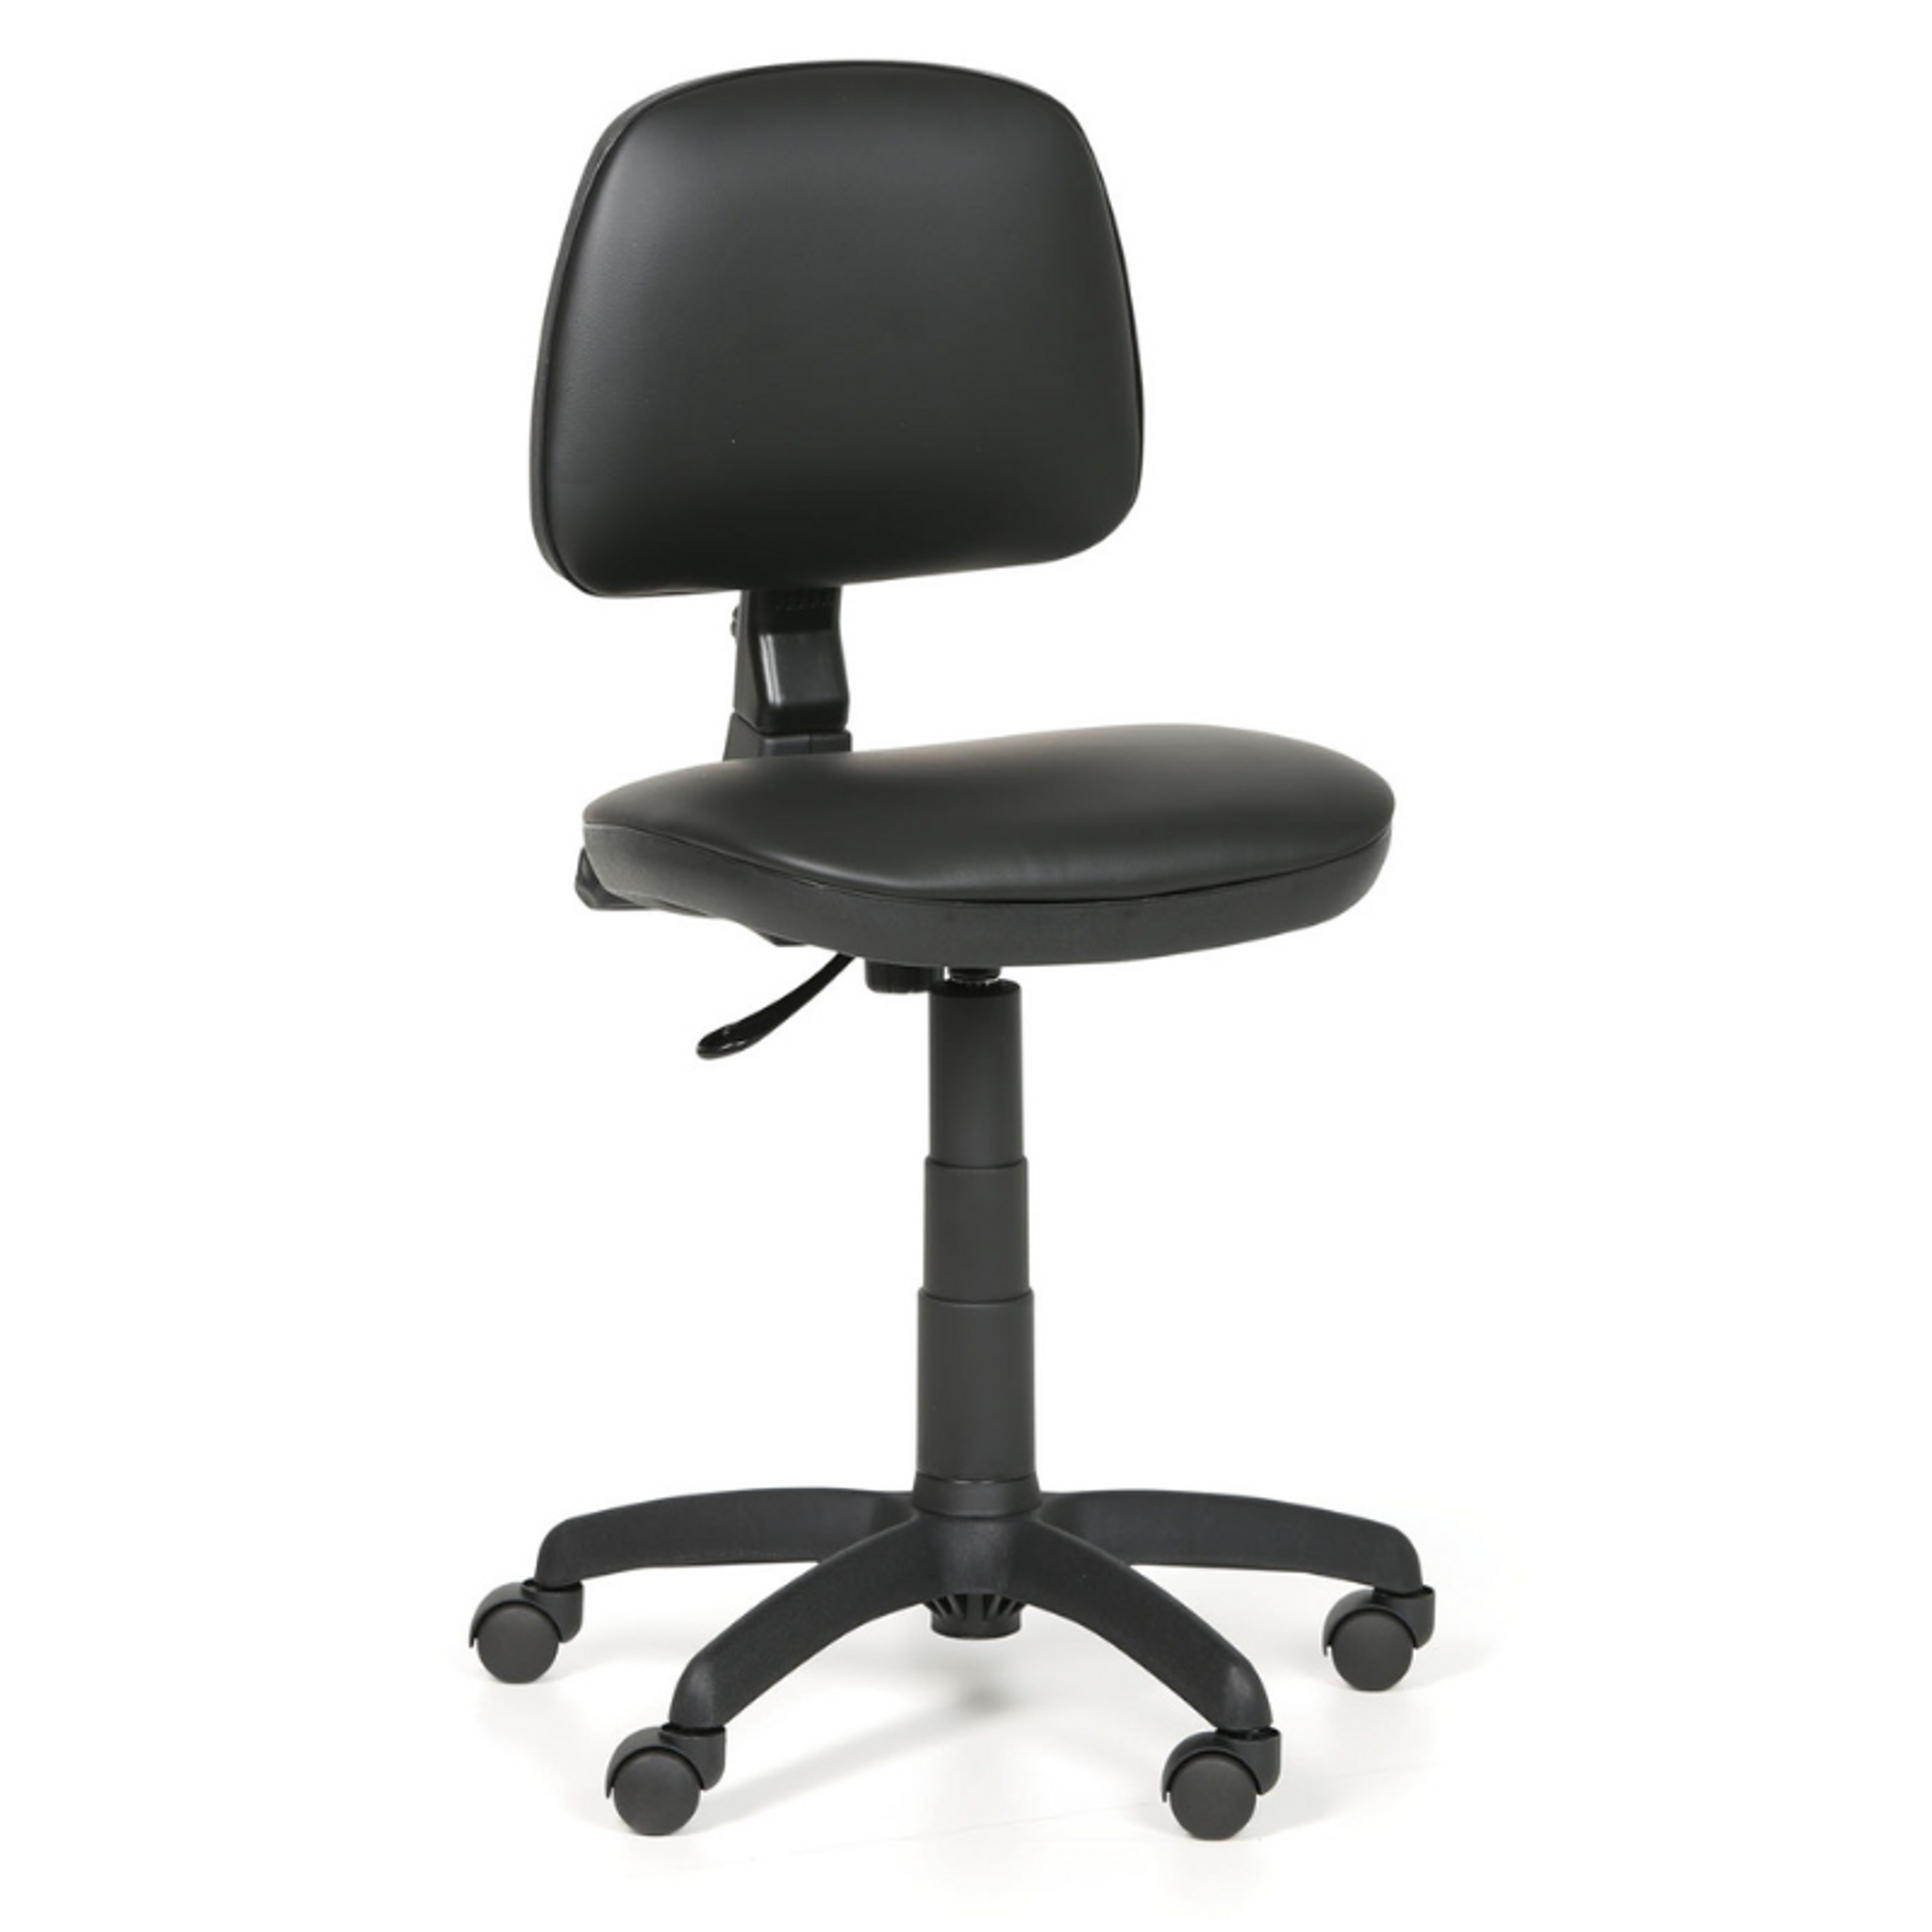 Pracovná stolička na kolieskach MILANO bez podpierok rúk, permanentný kontakt, pre mäkké podlahy